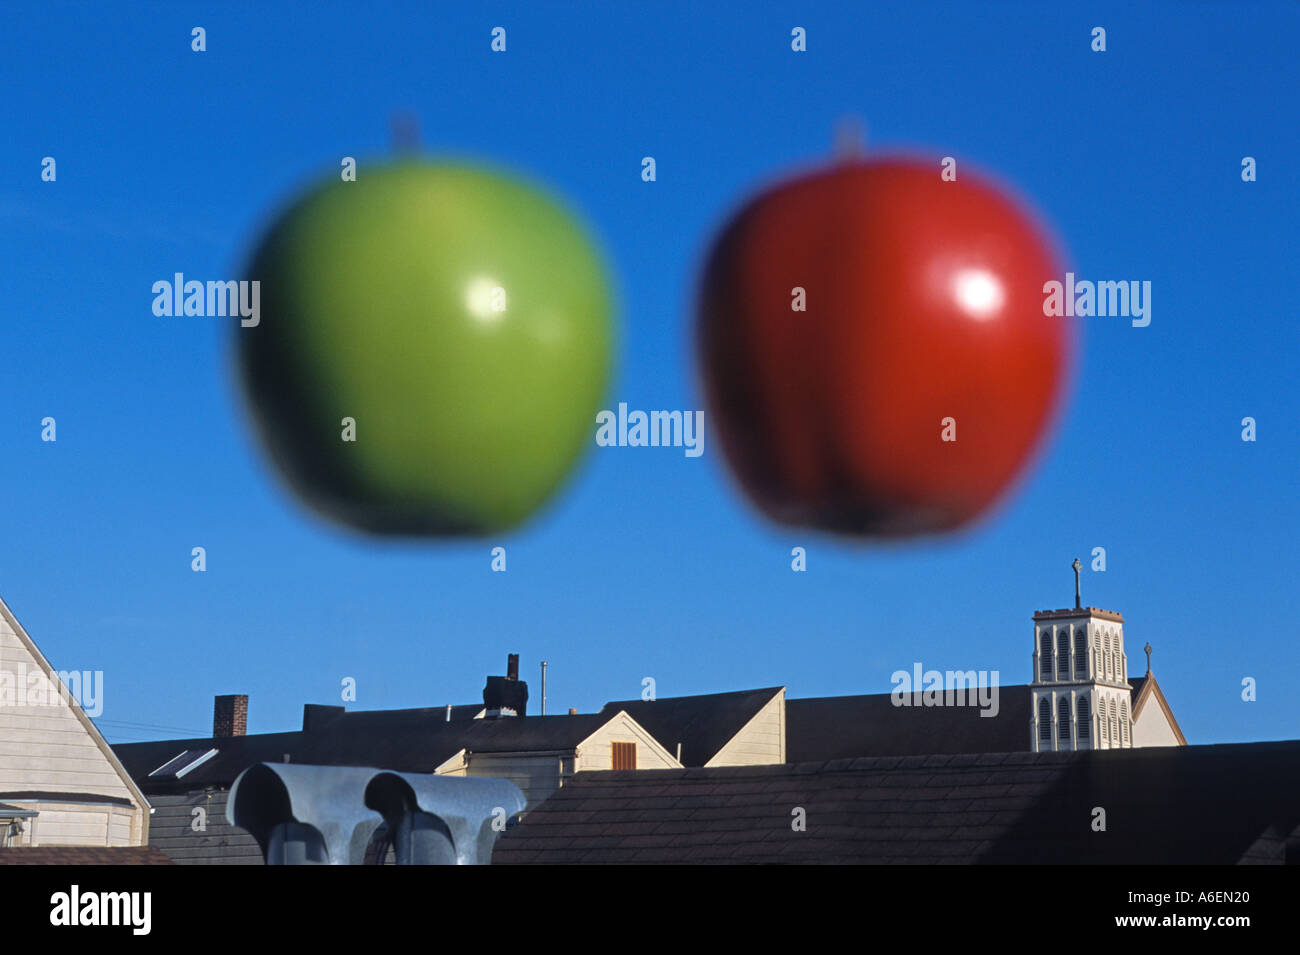 "Unscharfe Äpfel, rot und grün, schwebt über den Dächern" Stockfoto